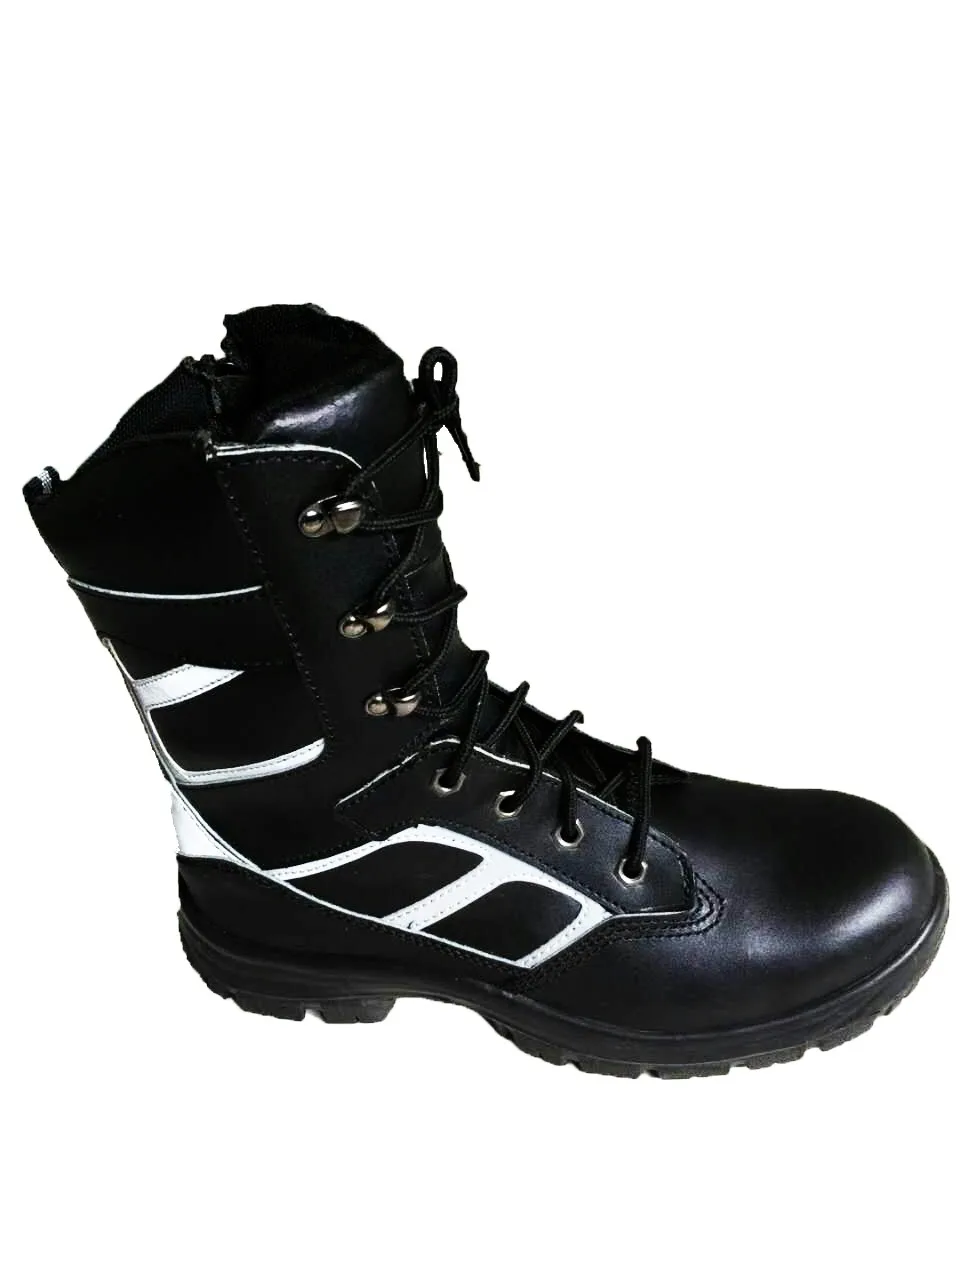 firefighter zipper boots